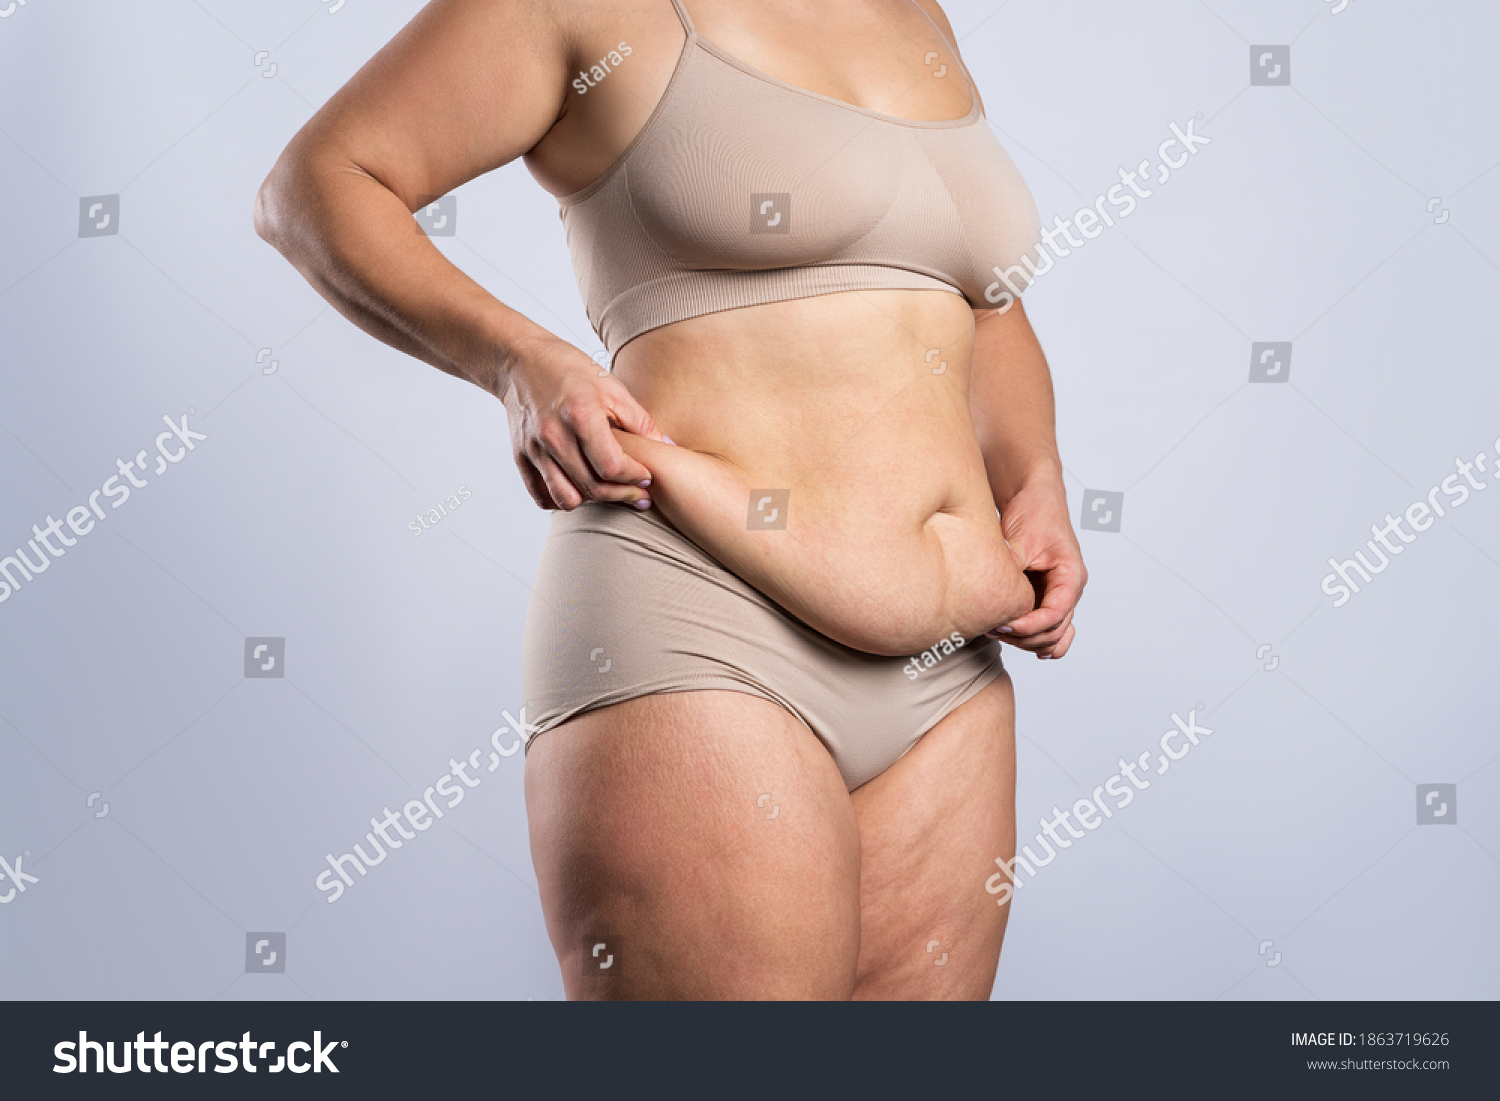 brian wickham add photo ugly fat naked women